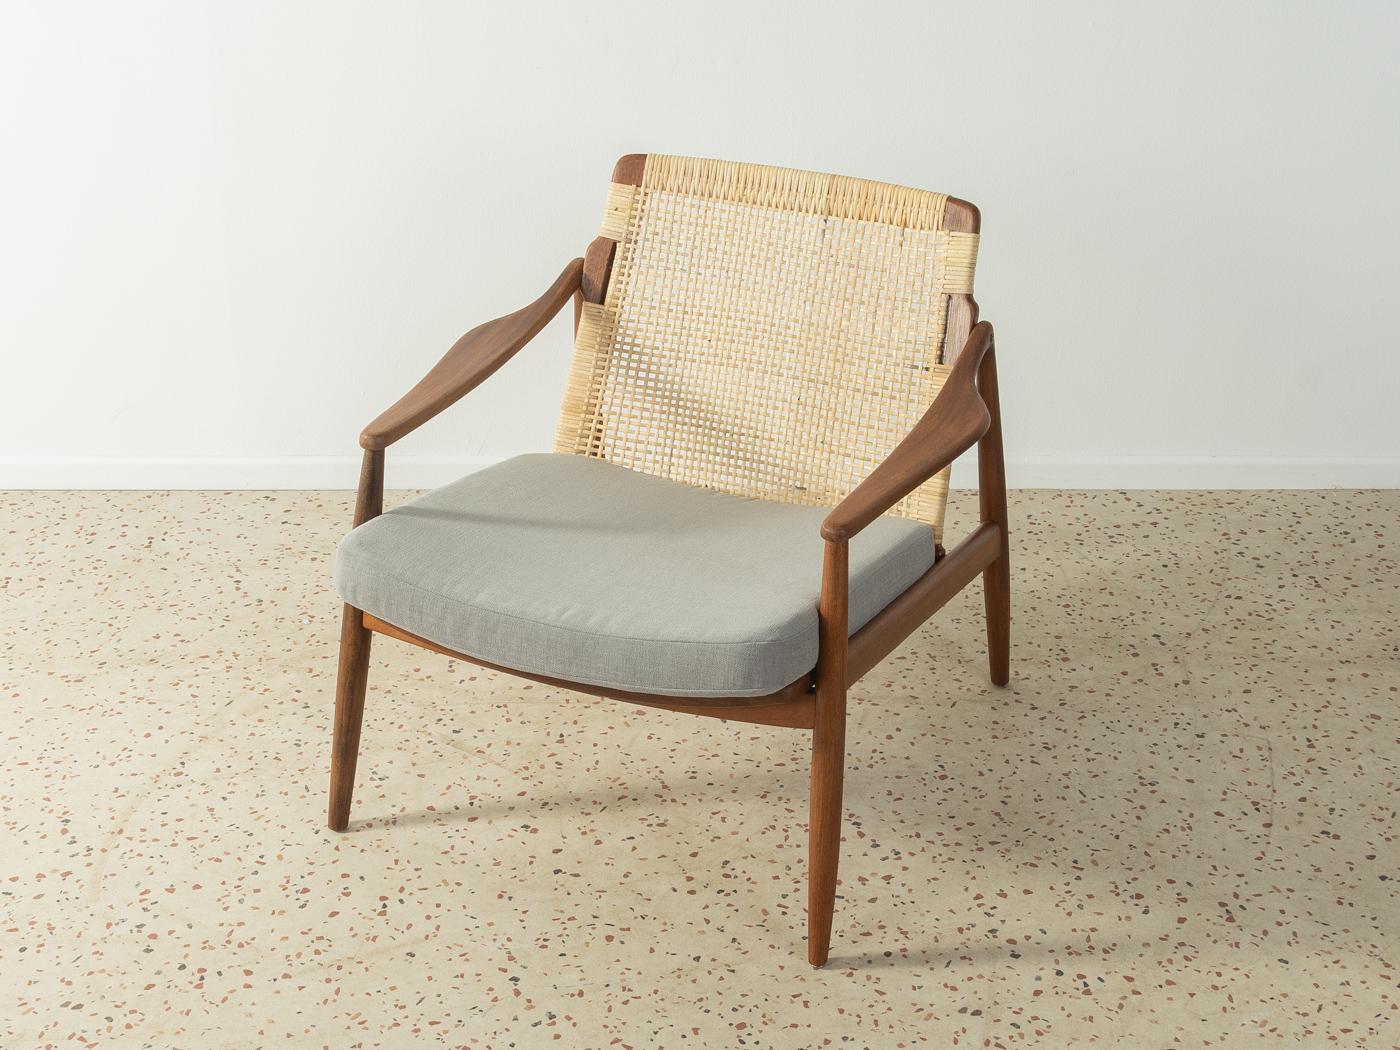 xklusiver Sessel, Typ 400, aus den 1950er Jahren von Hartmut Lohmeyer für Wilkhahn. Hochwertiges Teakholzgestell mit neuem, modernem Flechtwerk. Der Sessel wurde neu gepolstert und mit einem hochwertigen grauen Polsterstoff